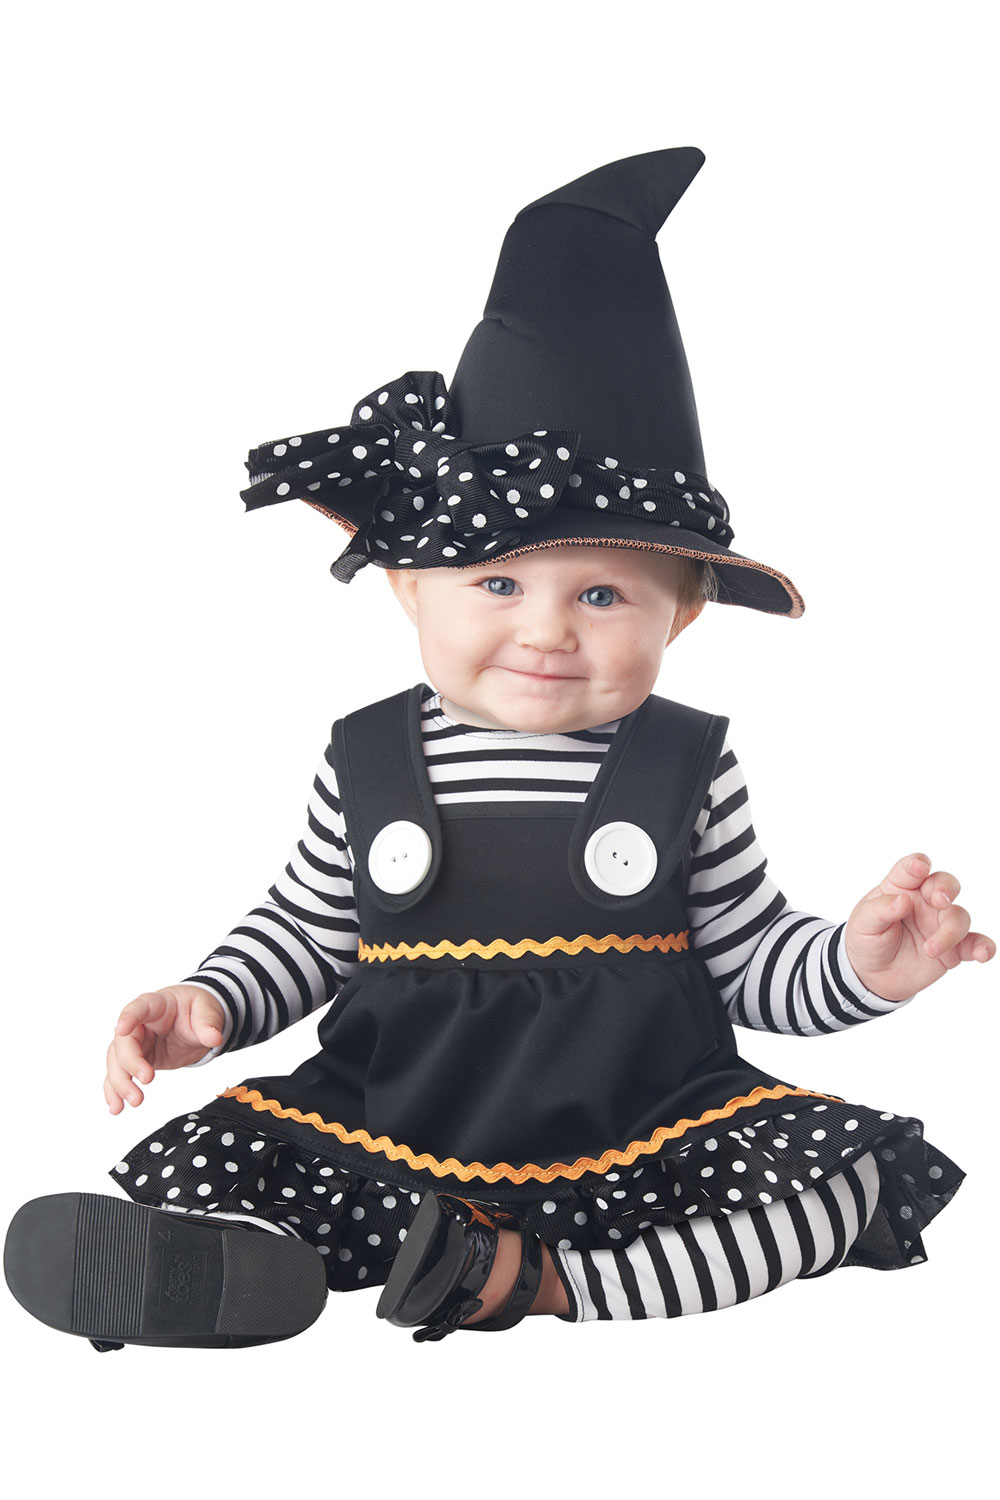 Halloween Baby Child Costume | eBay